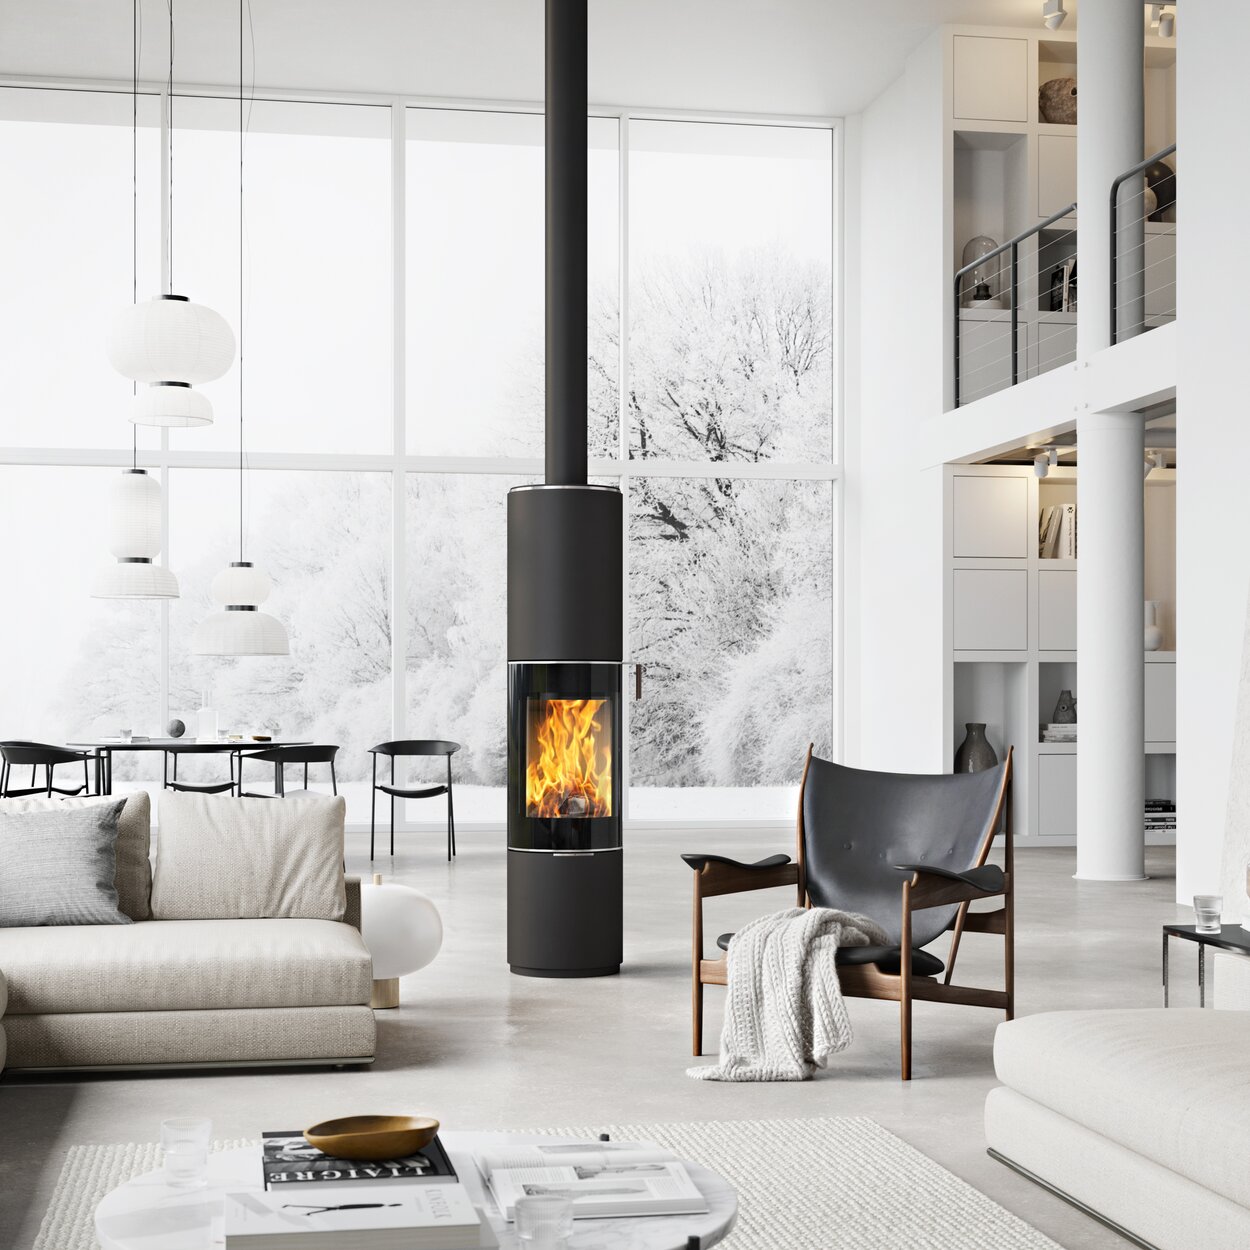 Poêle à bois PILAR en noir avec porte de foyer plein verre comme poêle rond pivotant au milieu d'une immense pièce à vivre de style scandinave